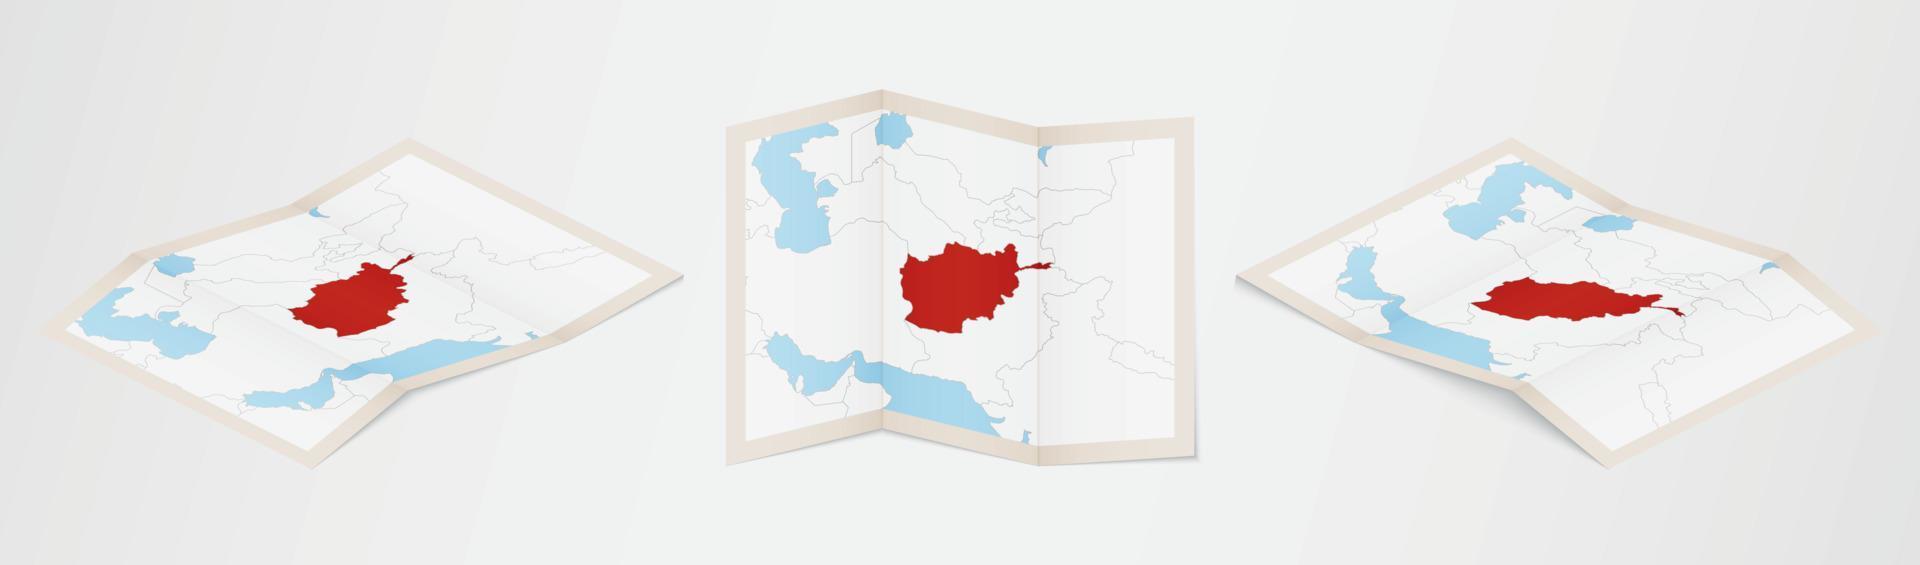 piegato carta geografica di afghanistan nel tre diverso versioni. vettore